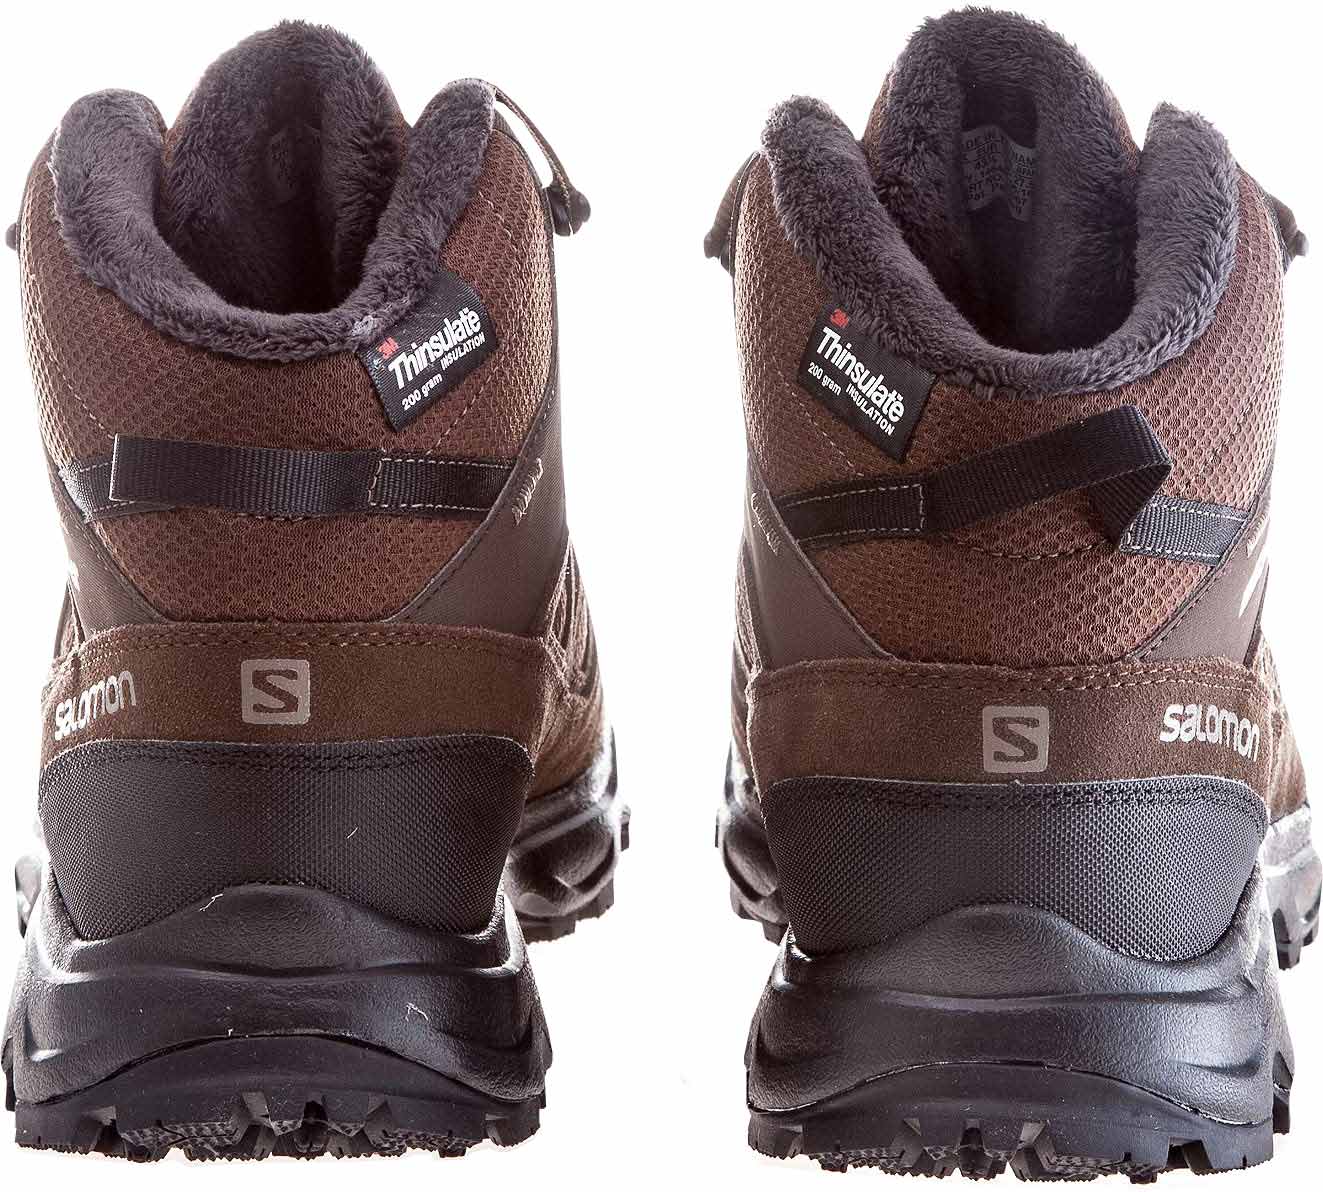 Men’s winter shoes